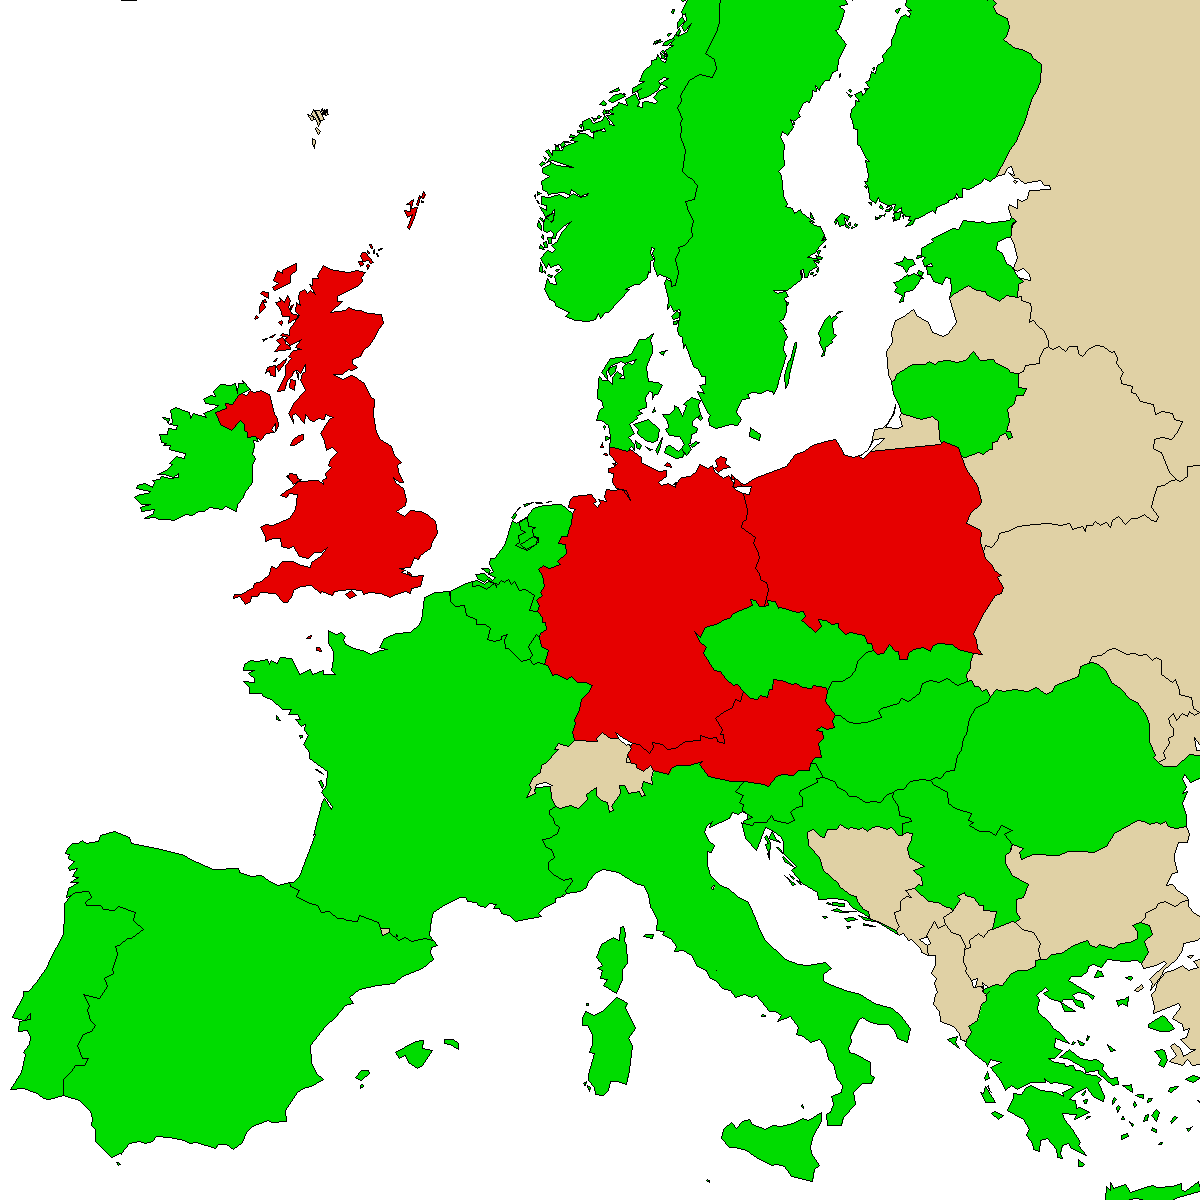 mapa de información legal para nuestro producto Mefedreno, los verdes son países sin prohibición, rojo con prohibición, el gris se desconoce